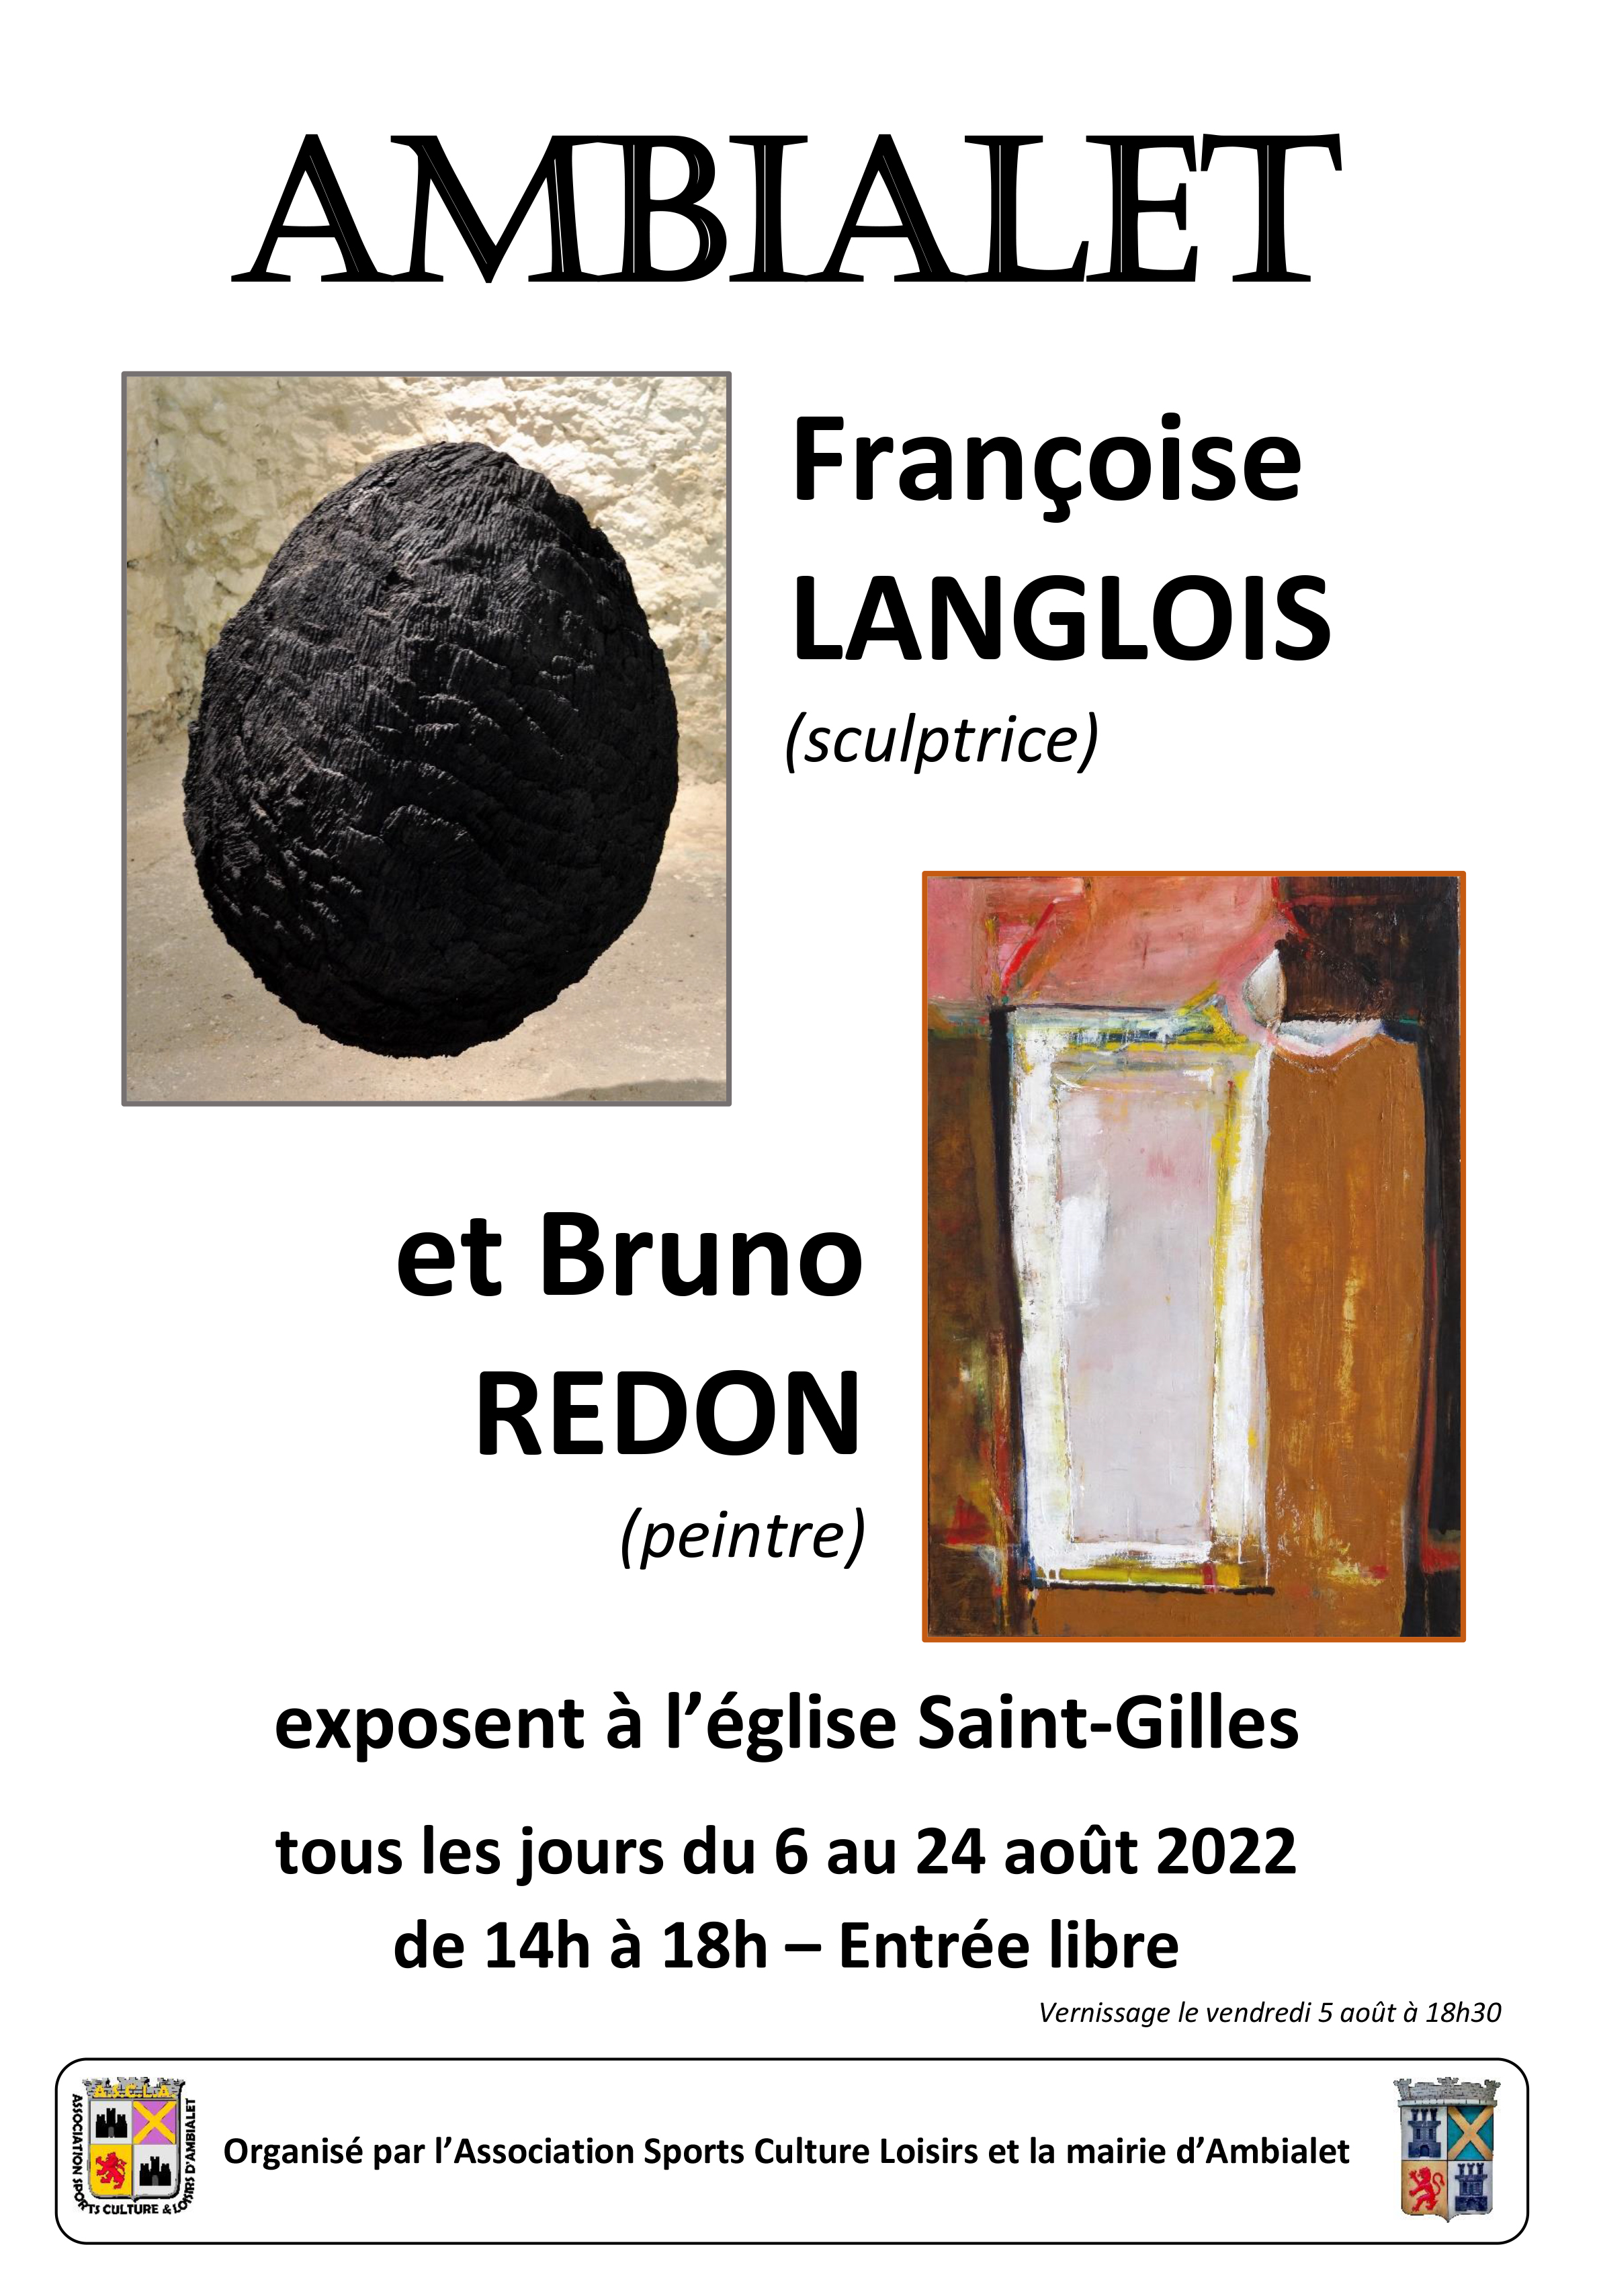 Exposition de Françoise Langlois et Bruno Redon à Ambialet